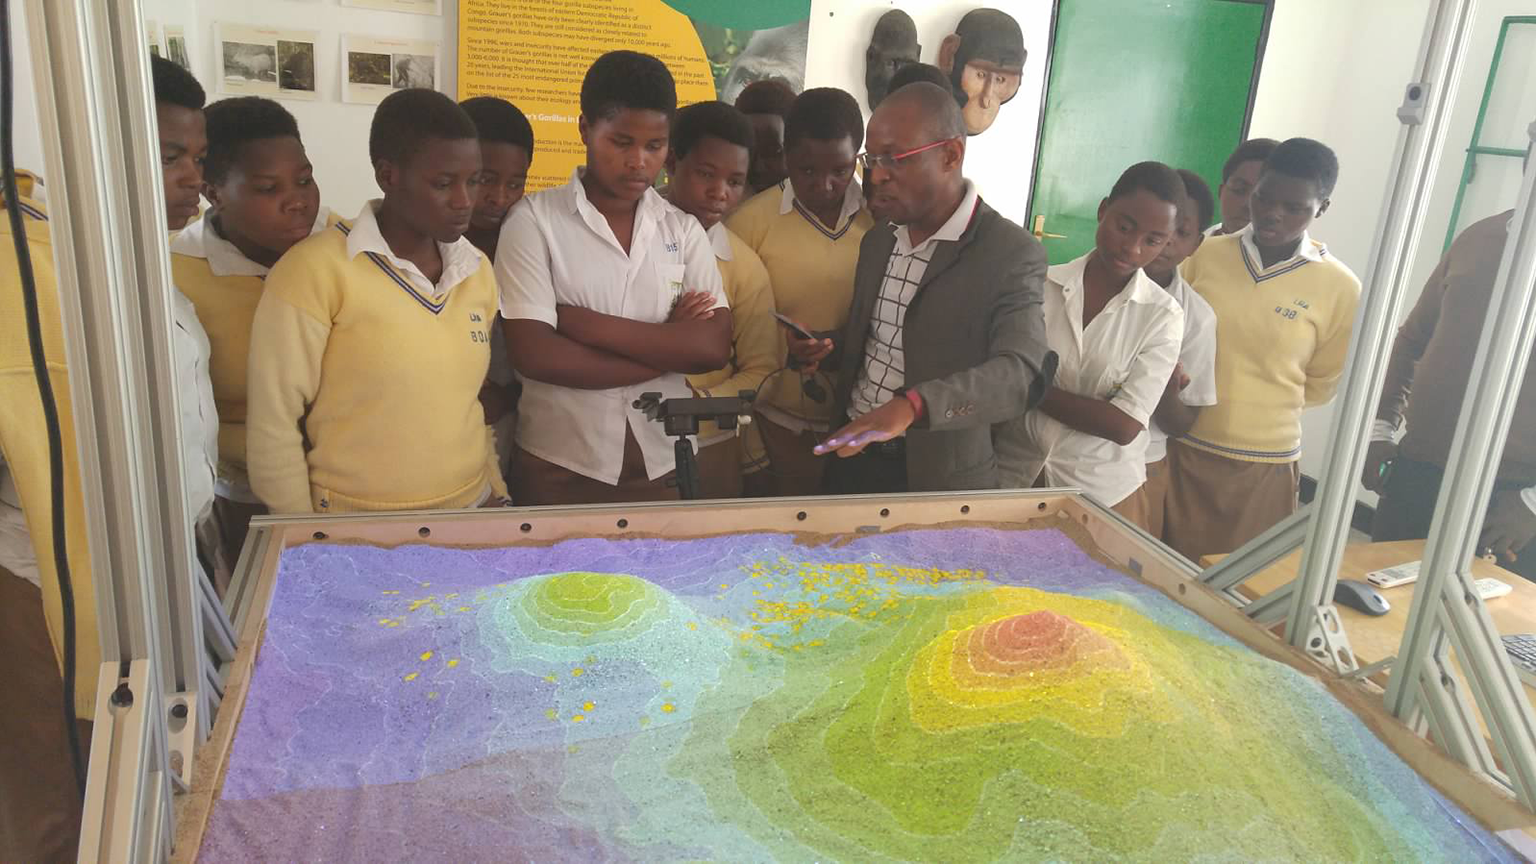 interactive sandbox with school children standing around it. 